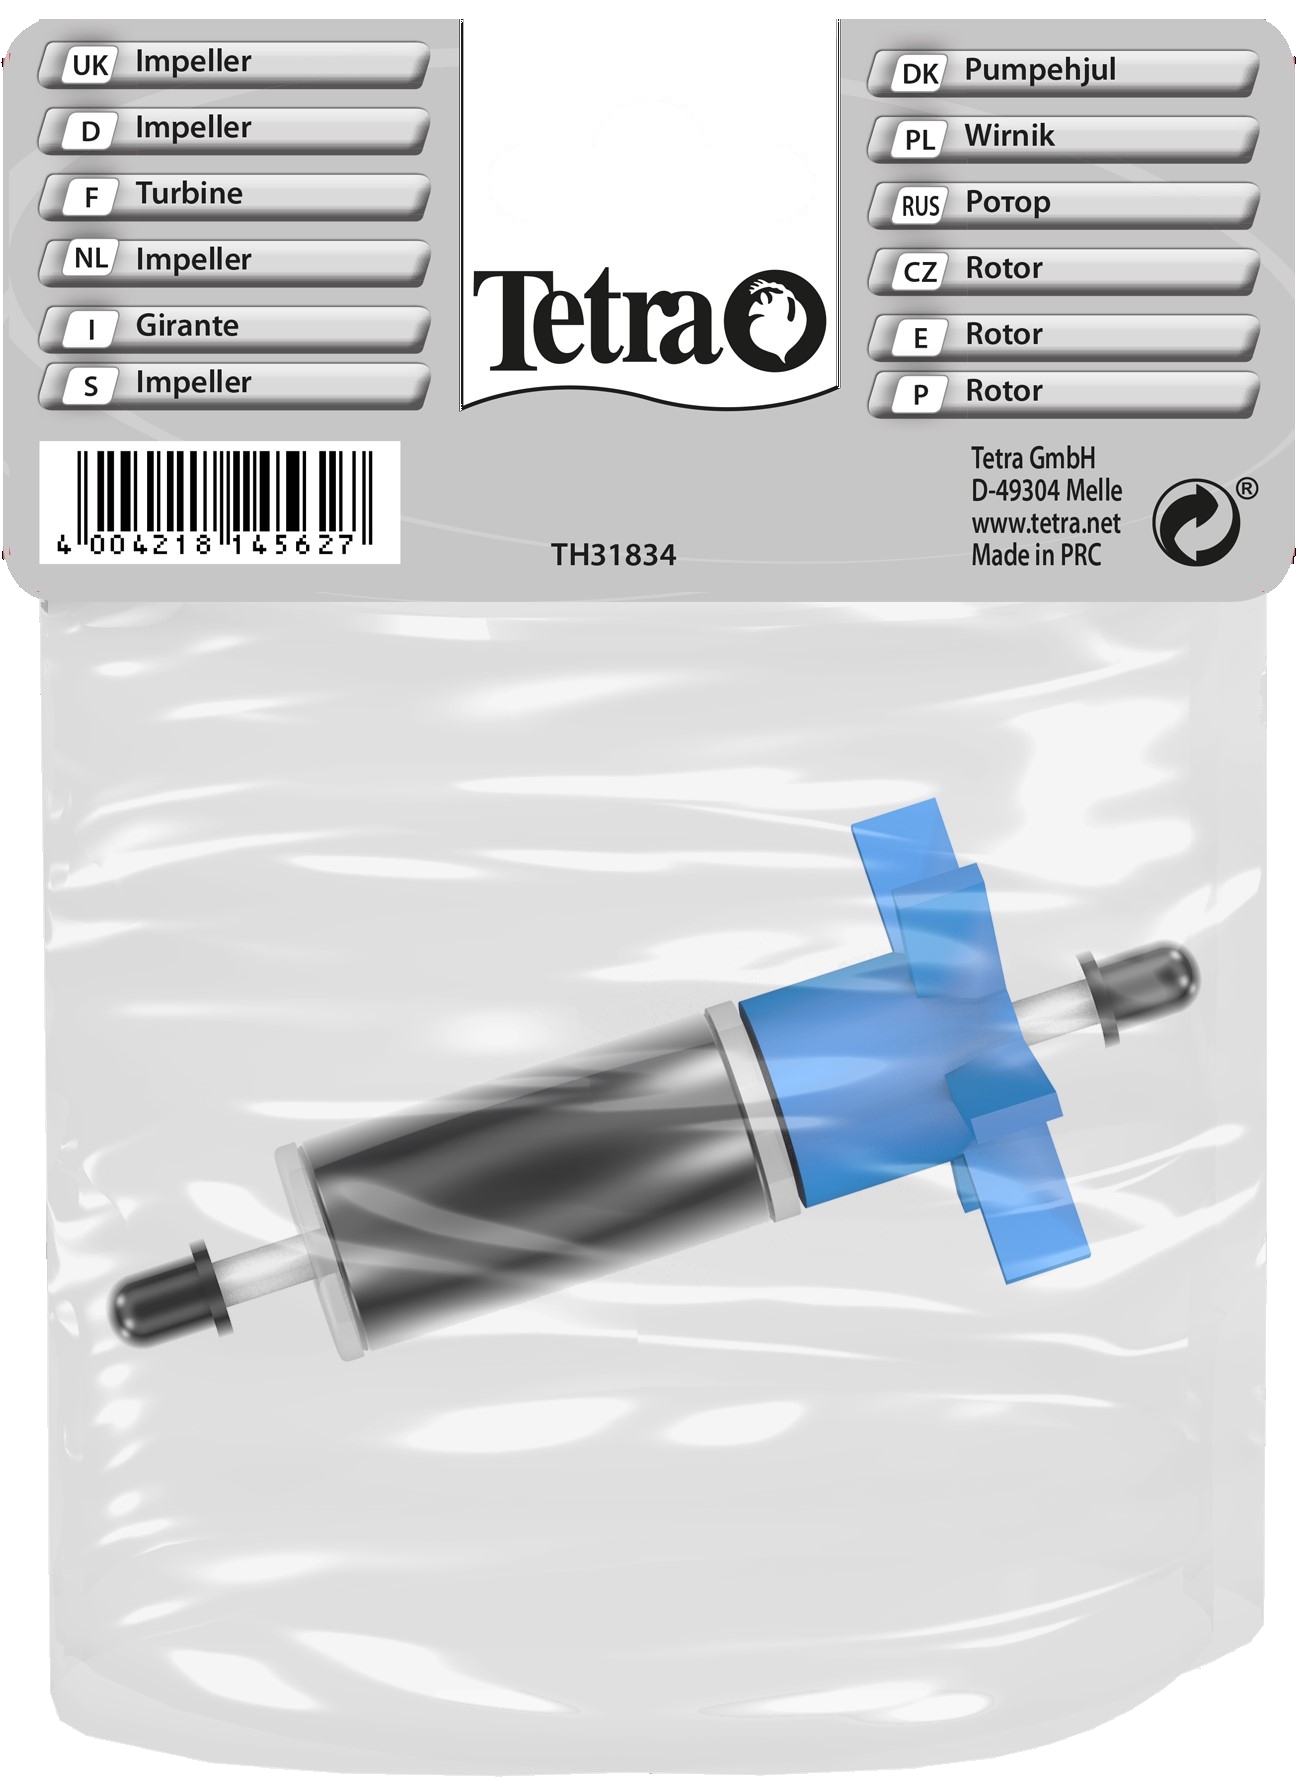 Tetratec EX 800 Plus Impeller